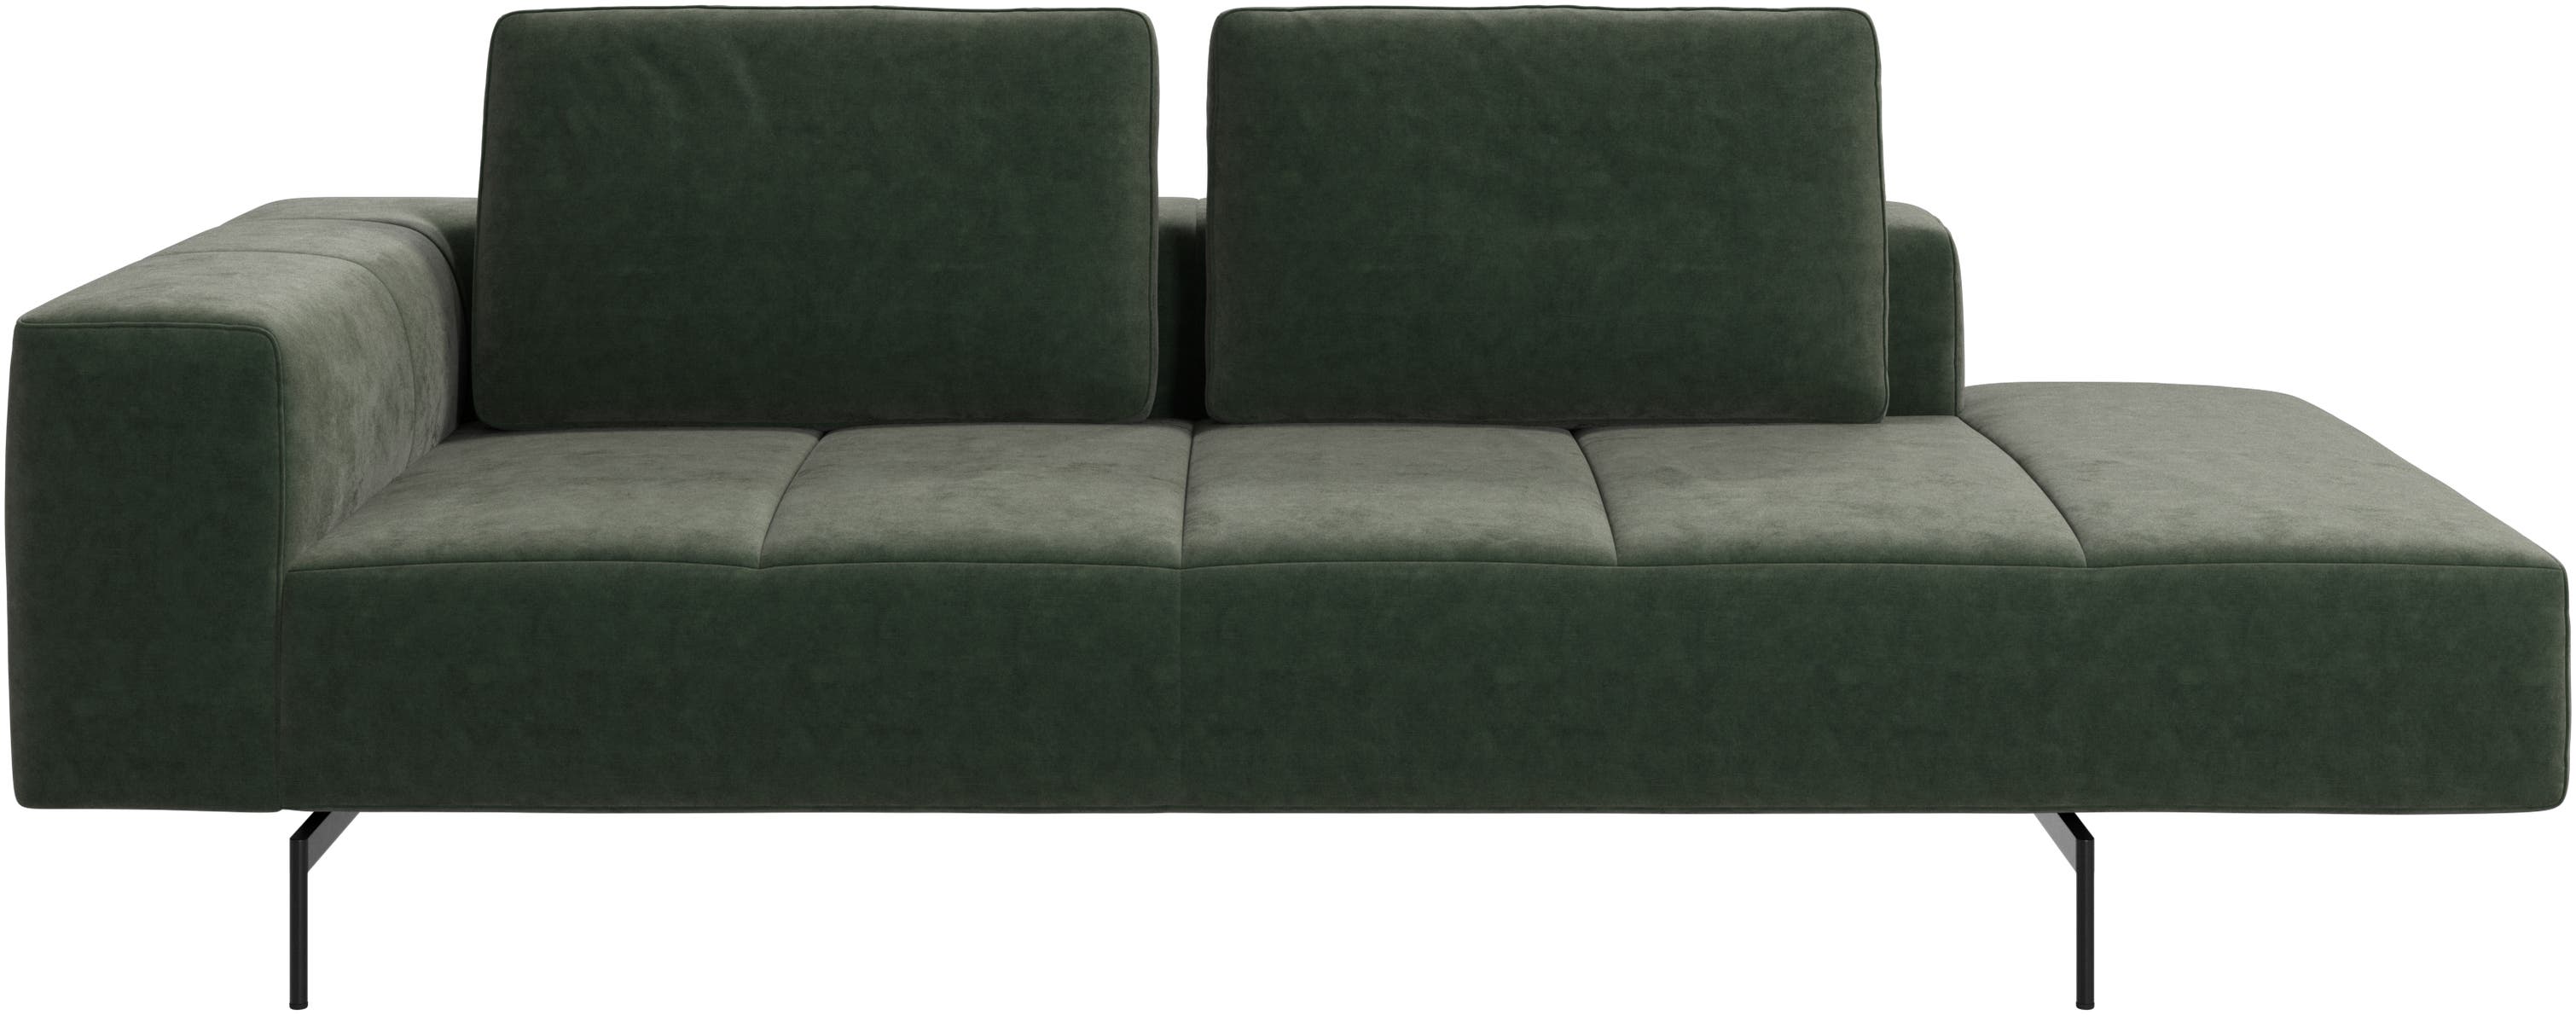 Amsterdam modul til sofa, armlæn venstre, open end højre